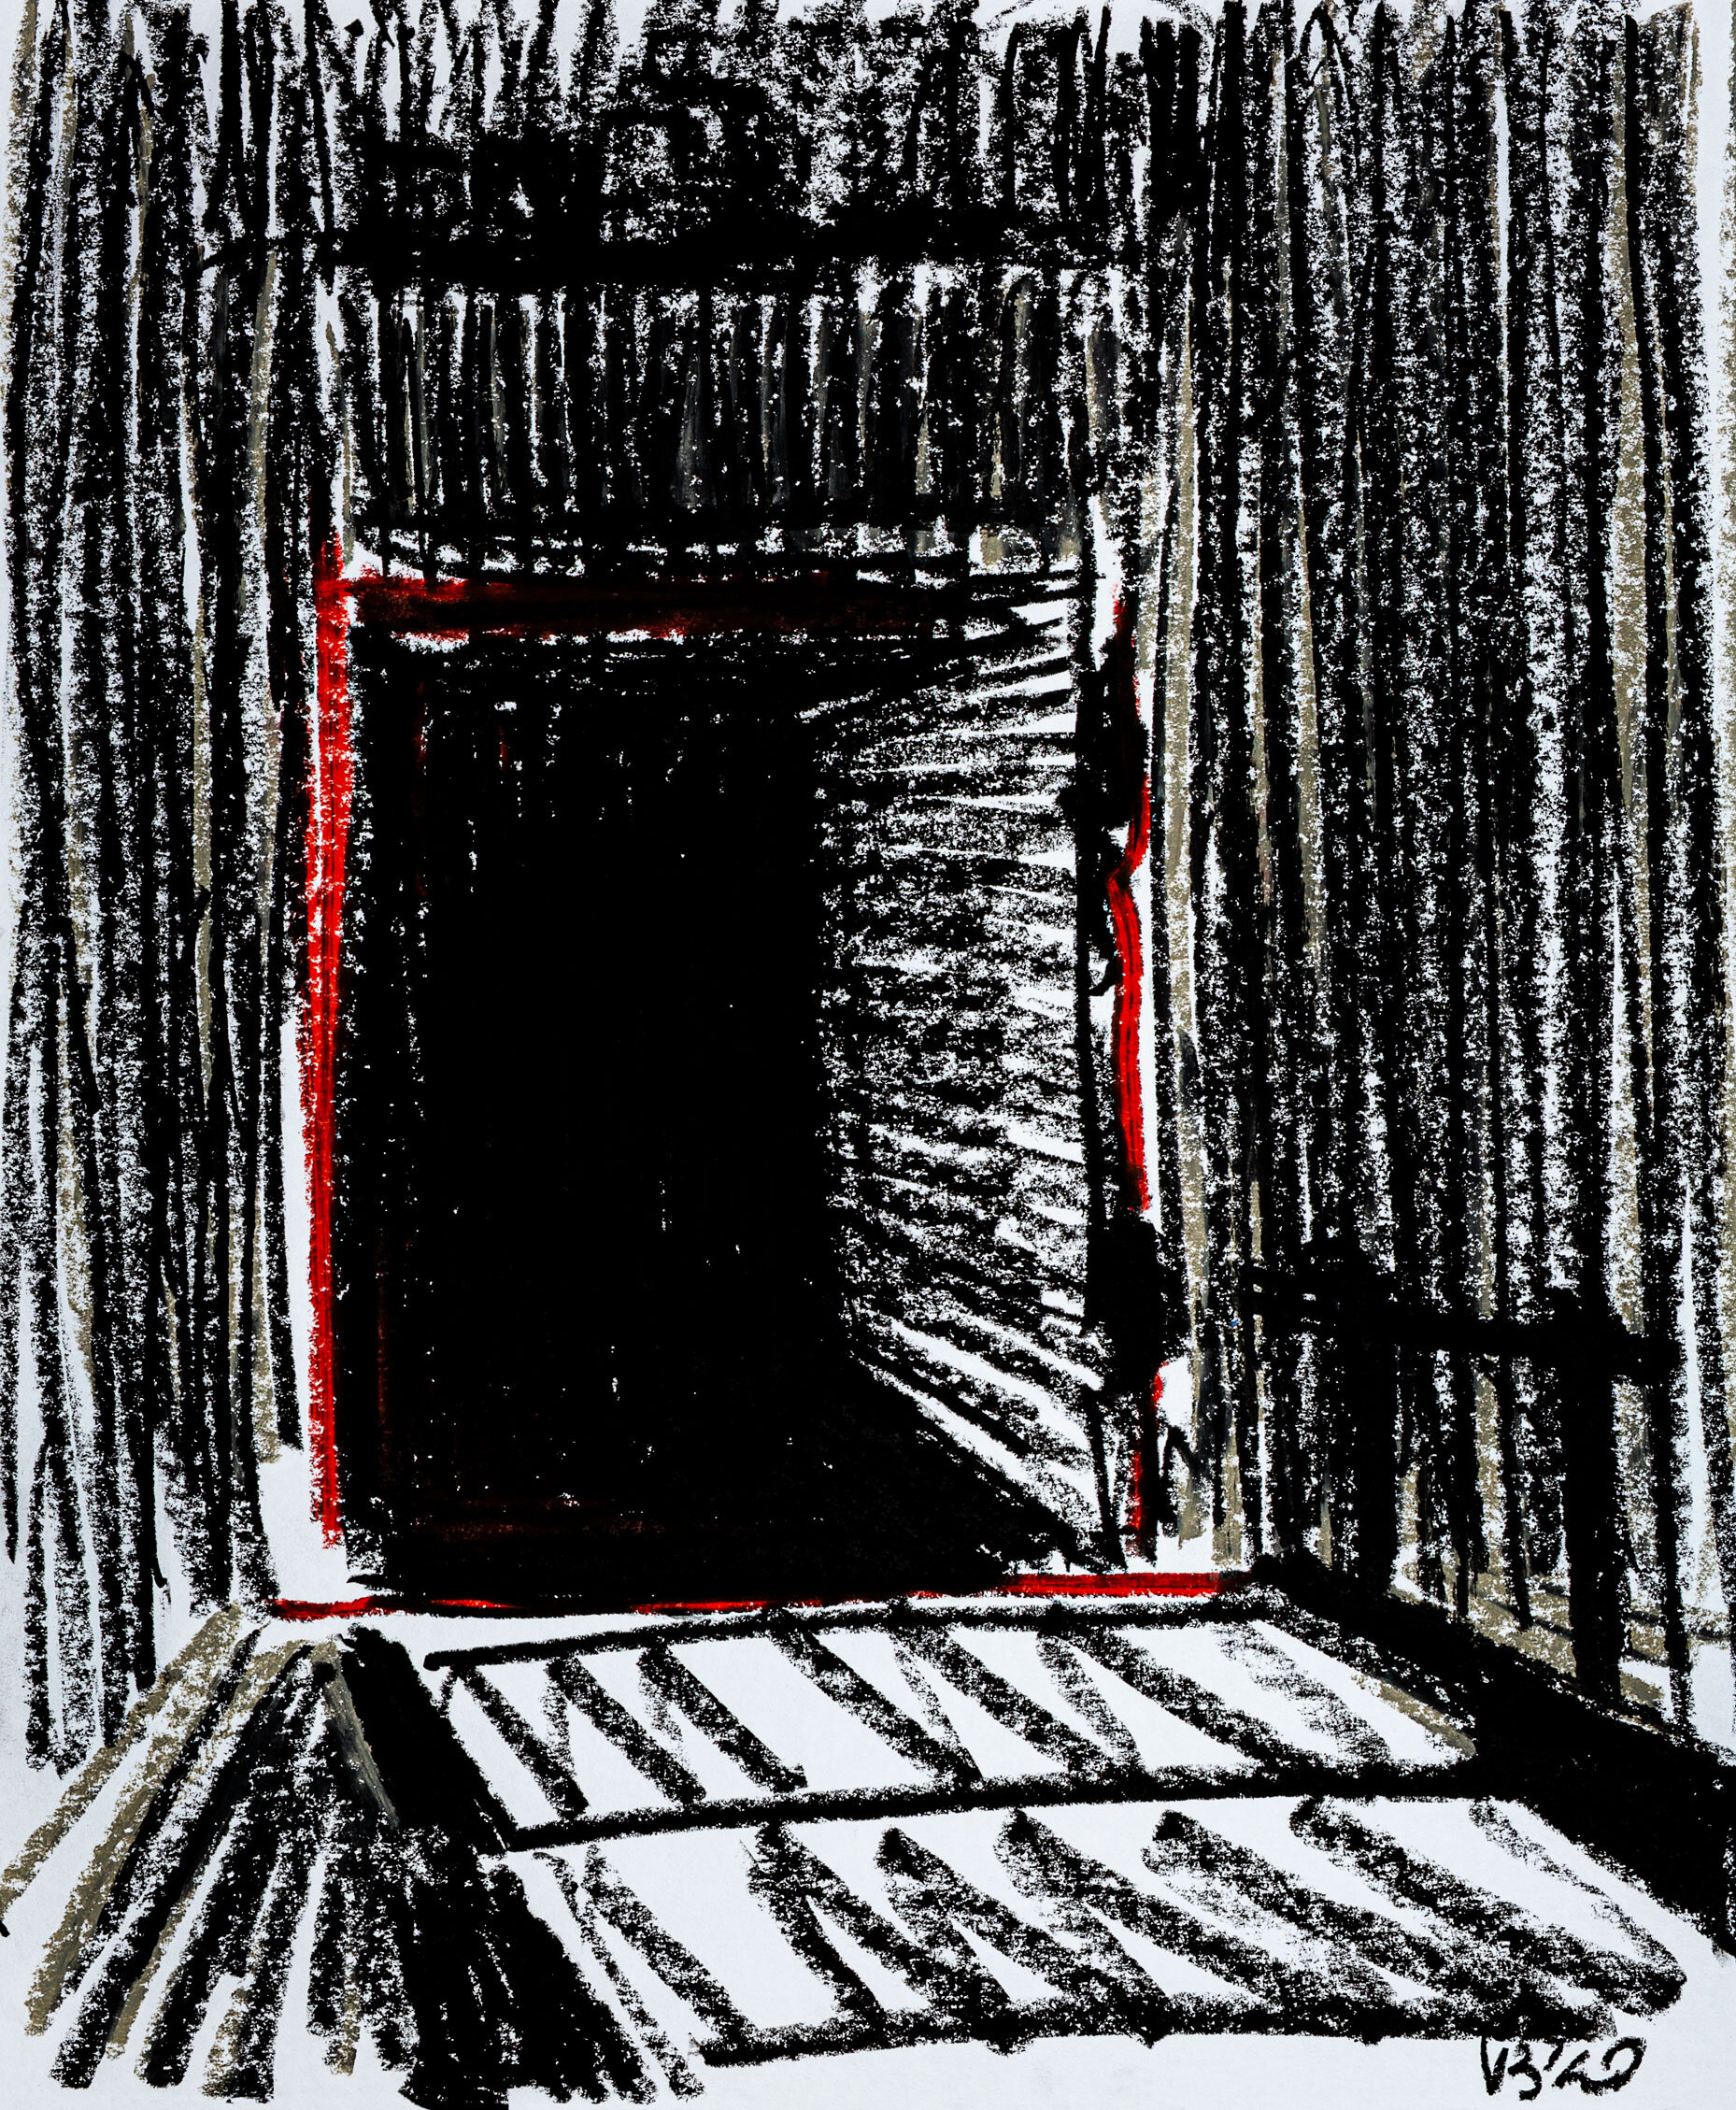 Black Door, 2020 - oil pastel on paper, 14x17in